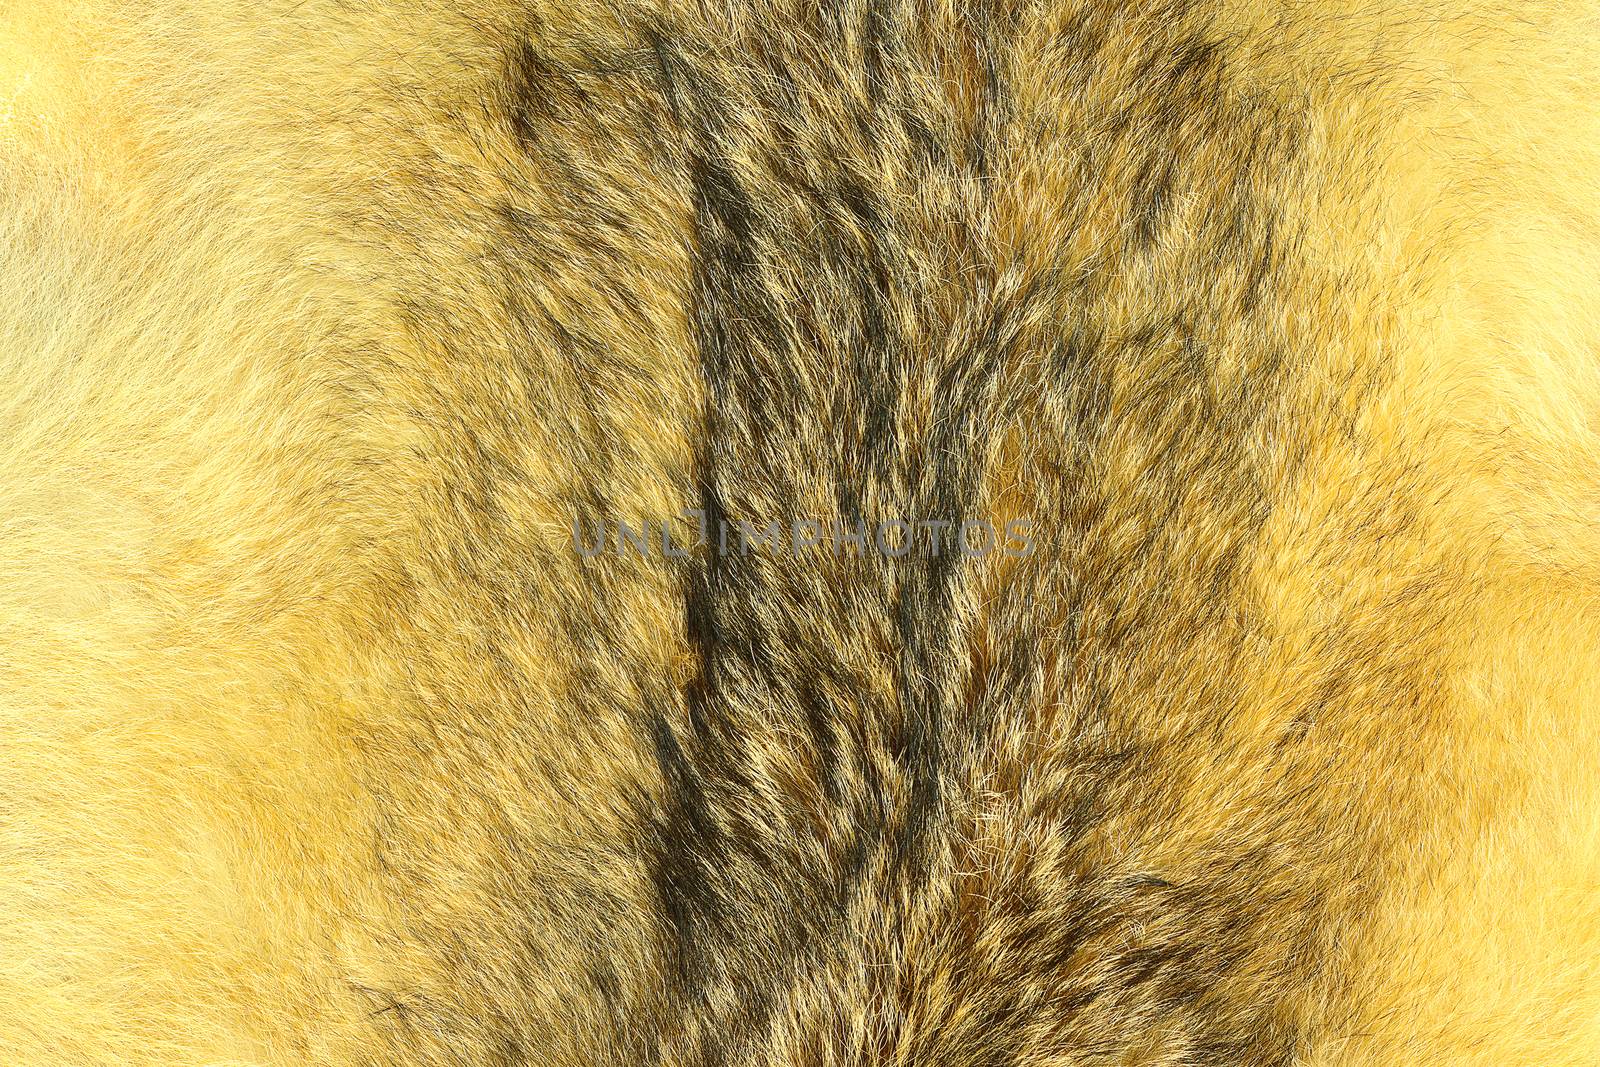 eurasian lynx fur, animal pelt  texture for your design